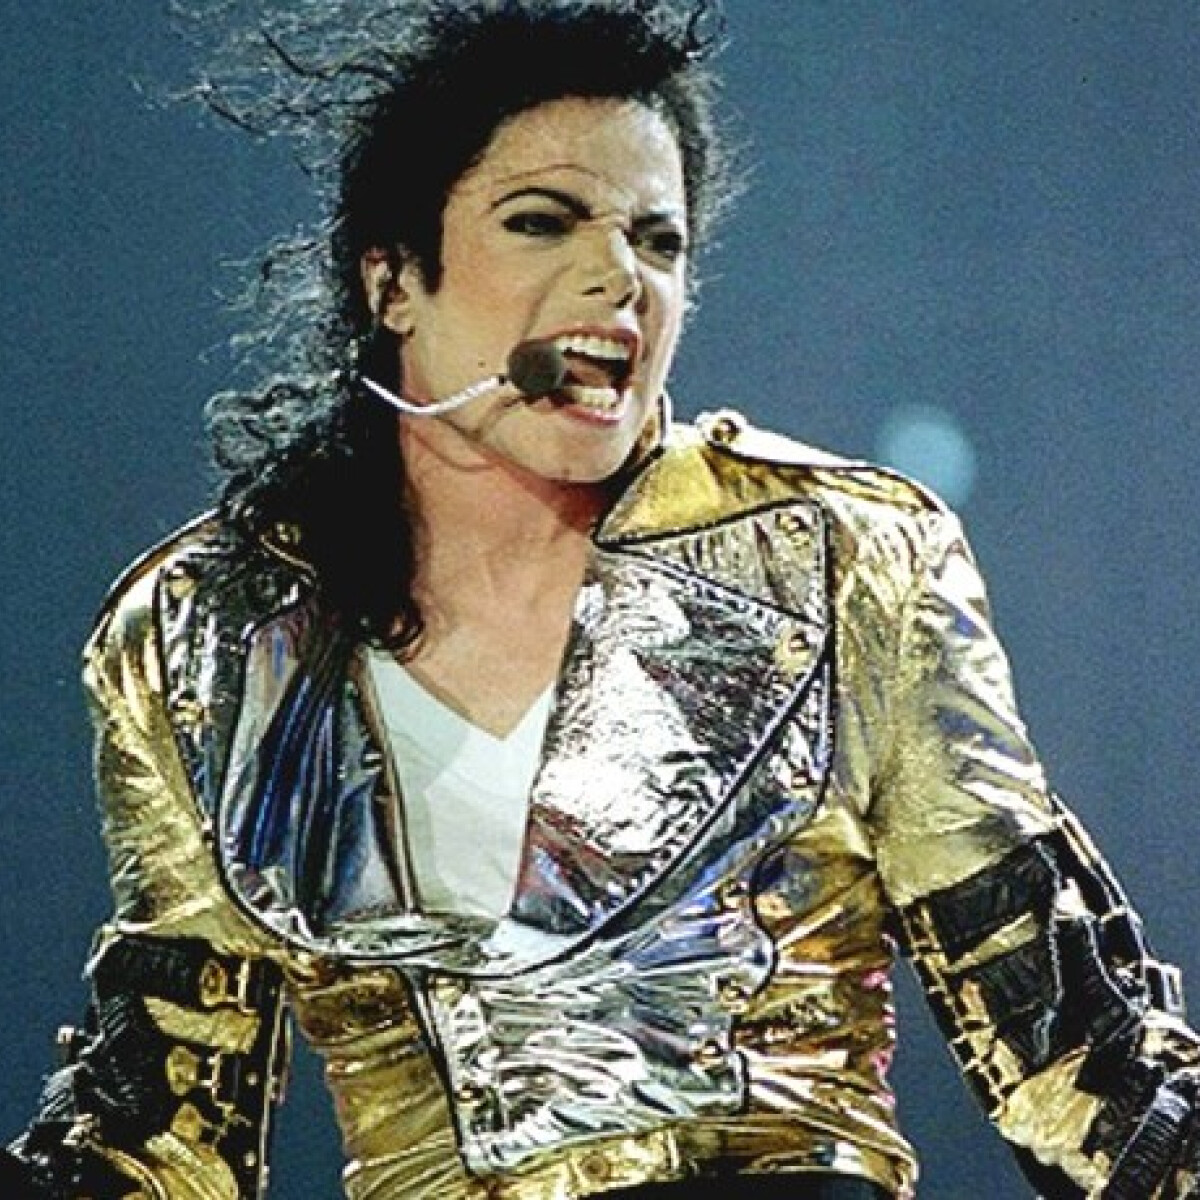 "Imádta az édeset, de nem evett cukrot vagy csokit" - Michael Jackson és az ő evési szokásai